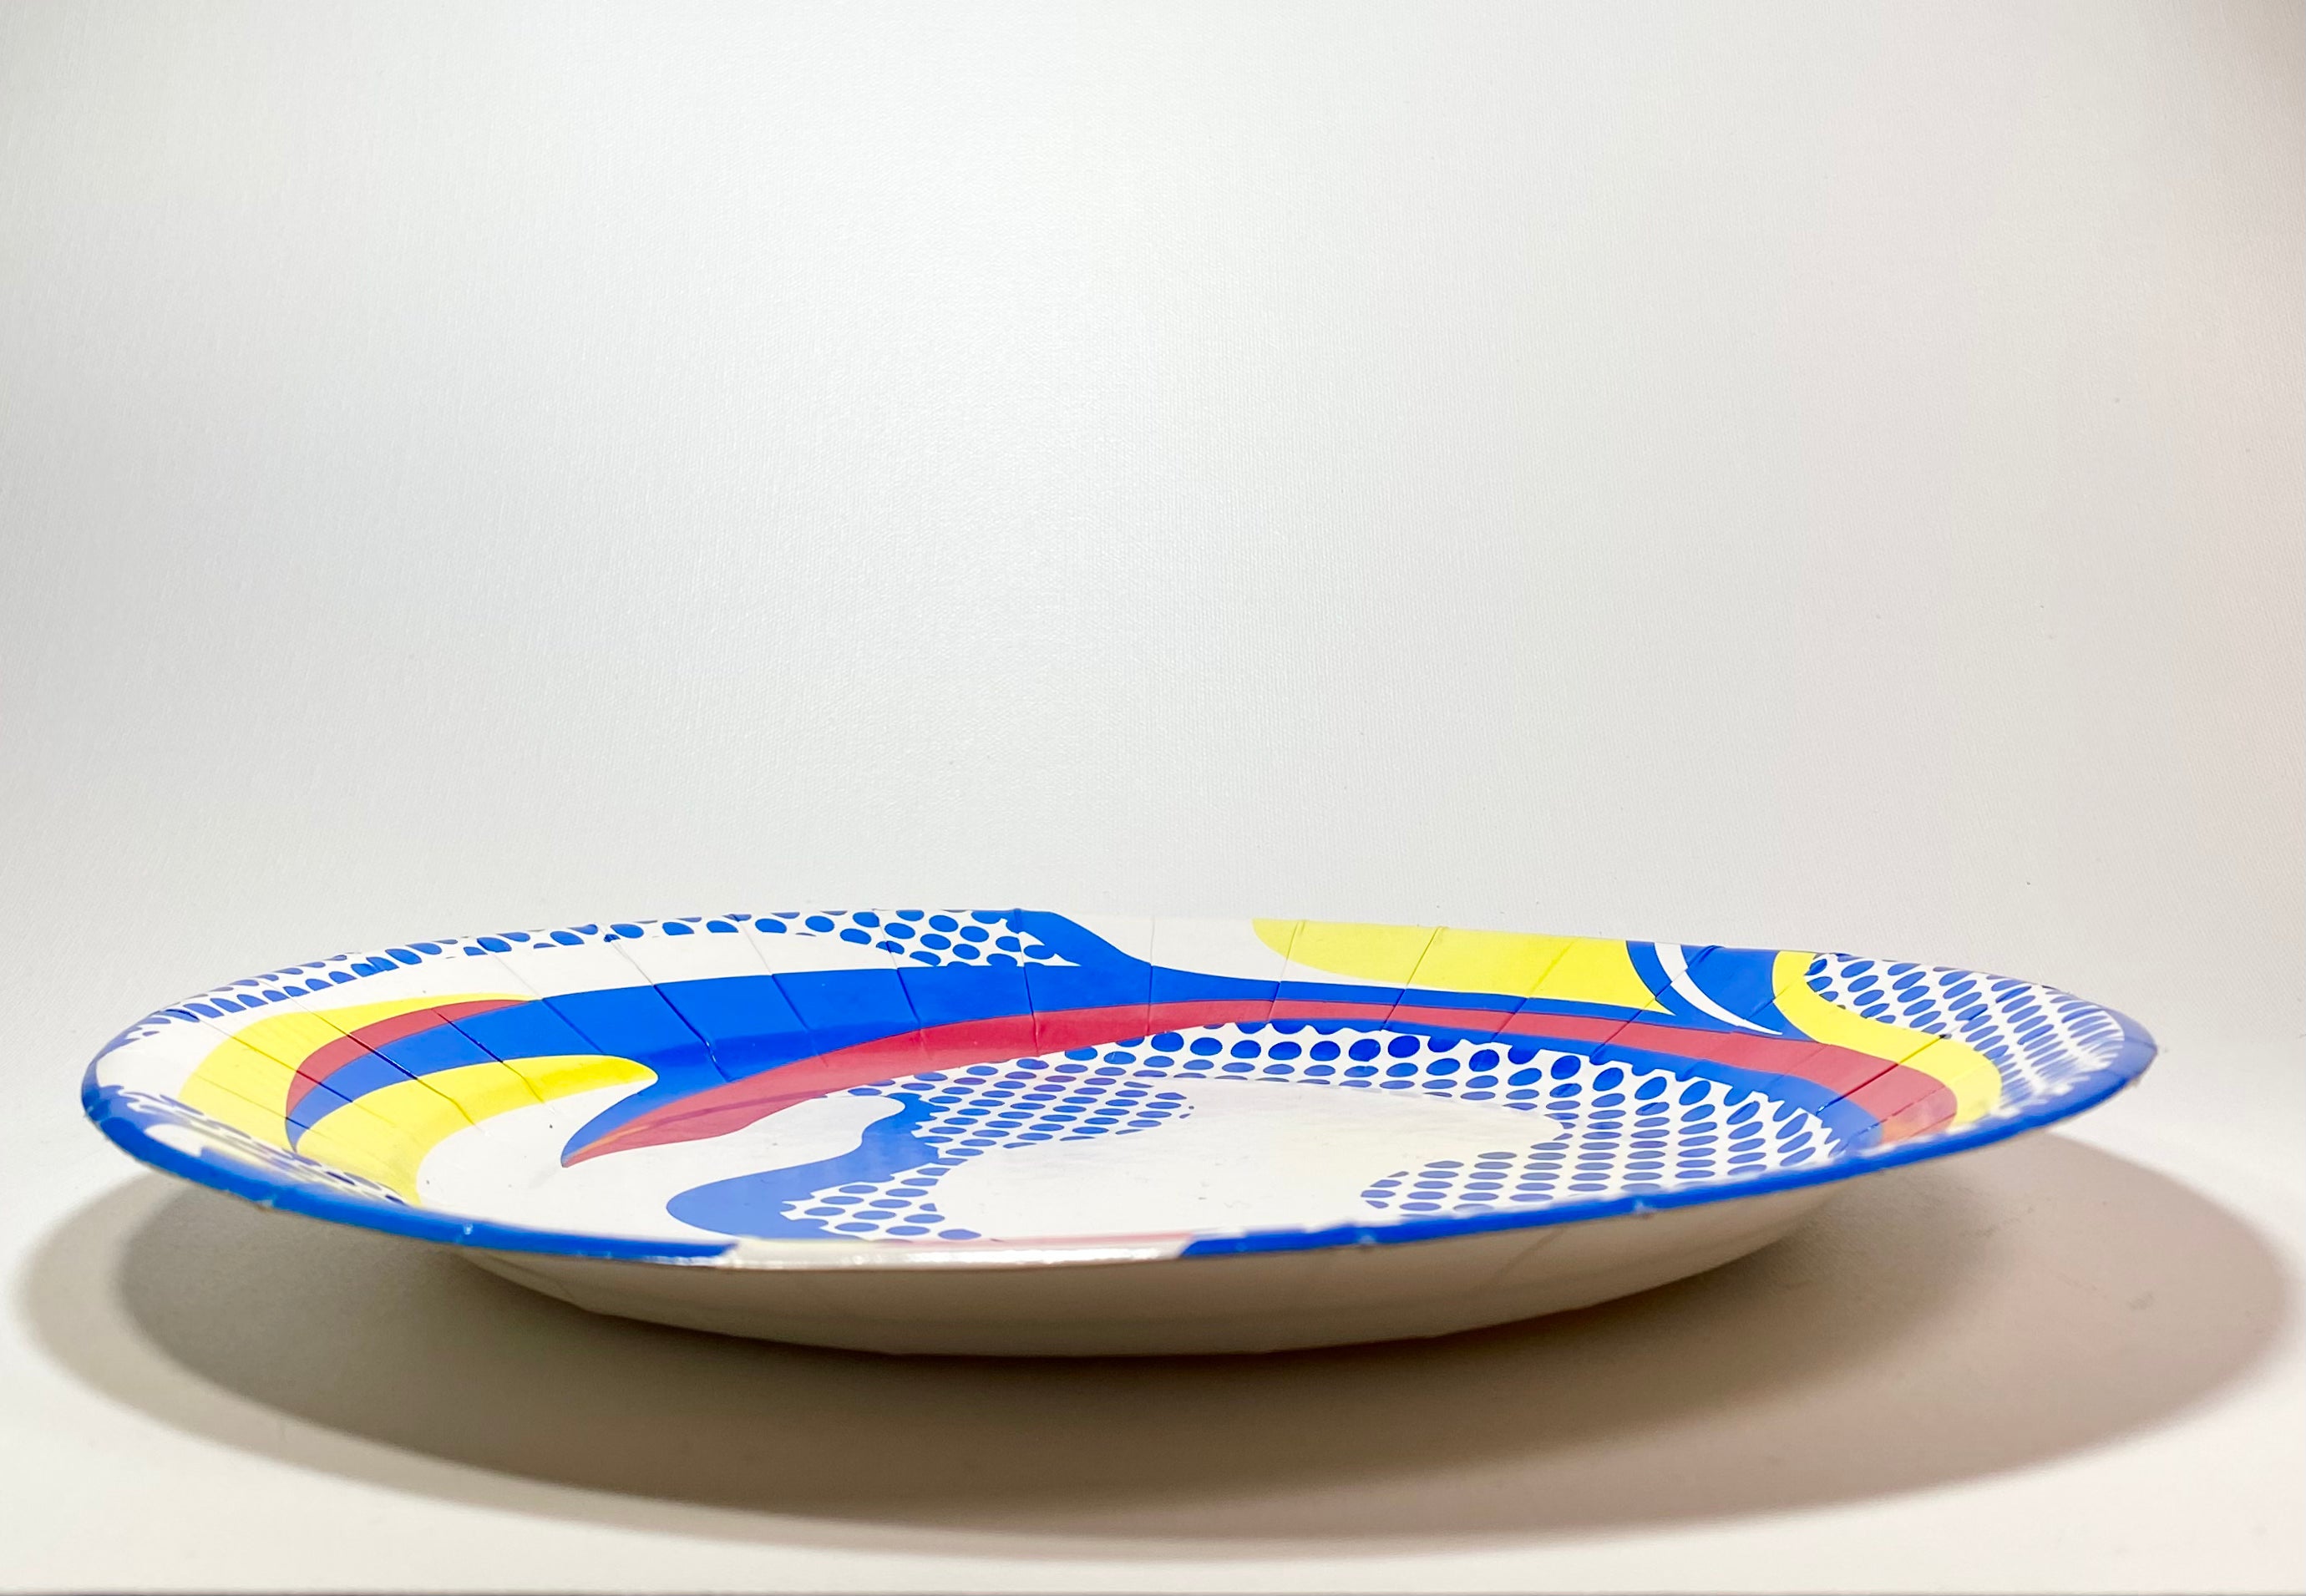 Roy Lichtenstein Paper Plate (1969) Paper Cup (1967)